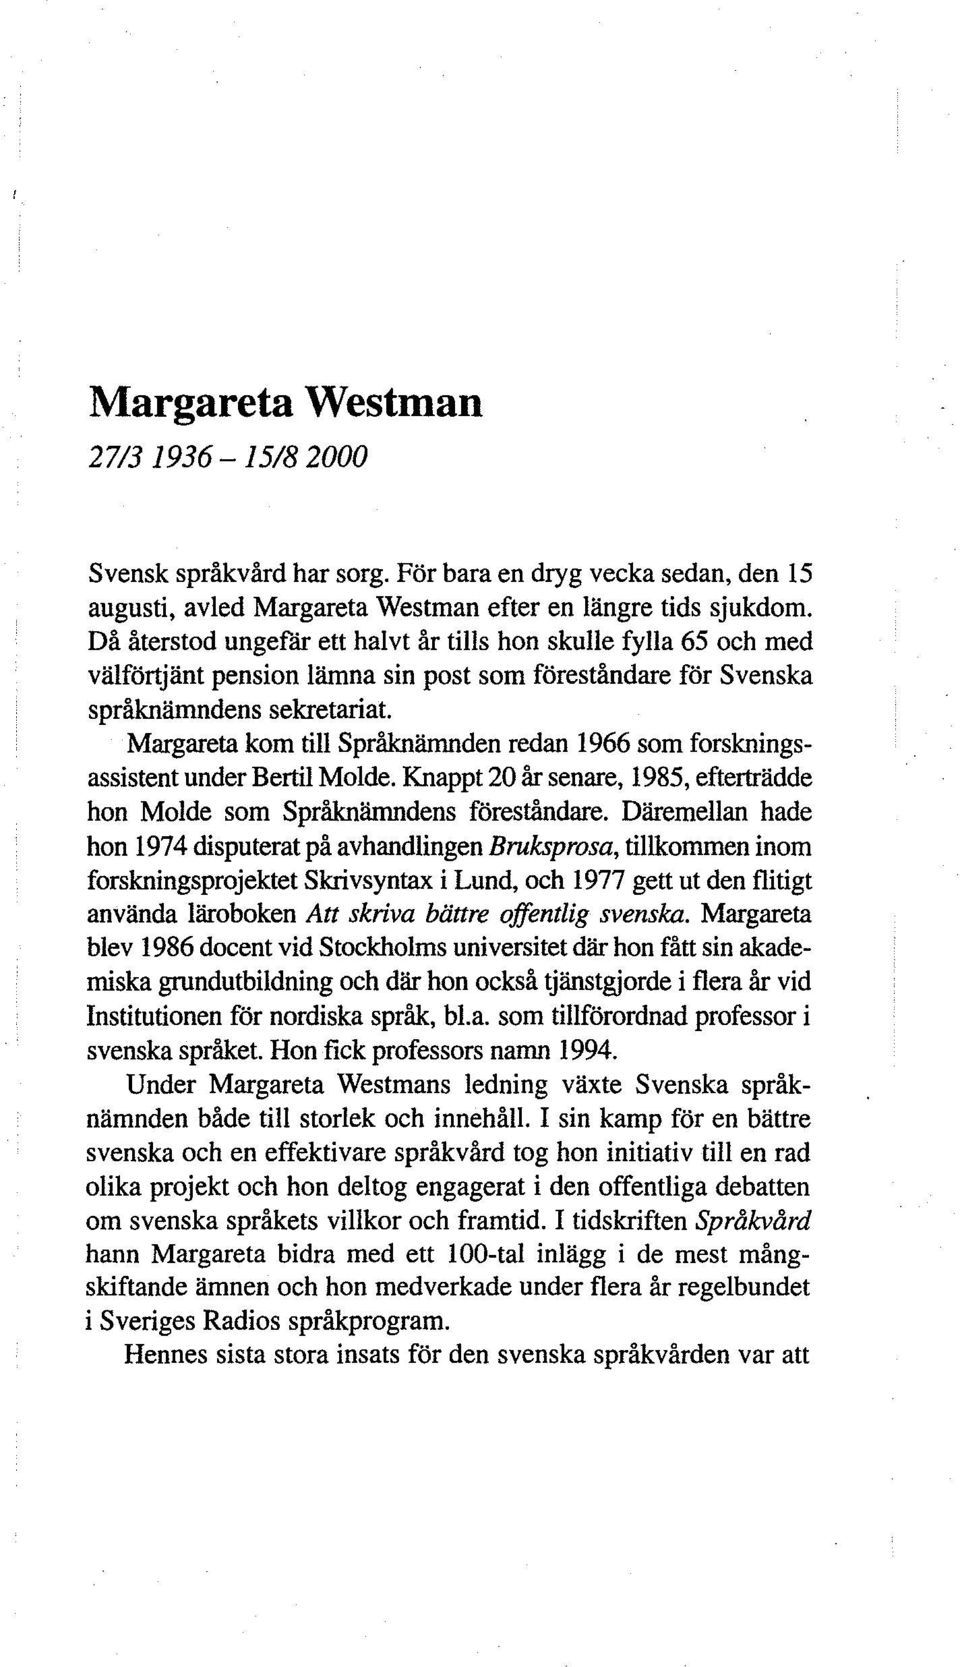 Margareta kom till Språknämnden redan 1966 som forskningsassistent under Bertil Molde. Knappt 20 år senare, 1985, efterträdde hon Molde som Språknämndens föreståndare.